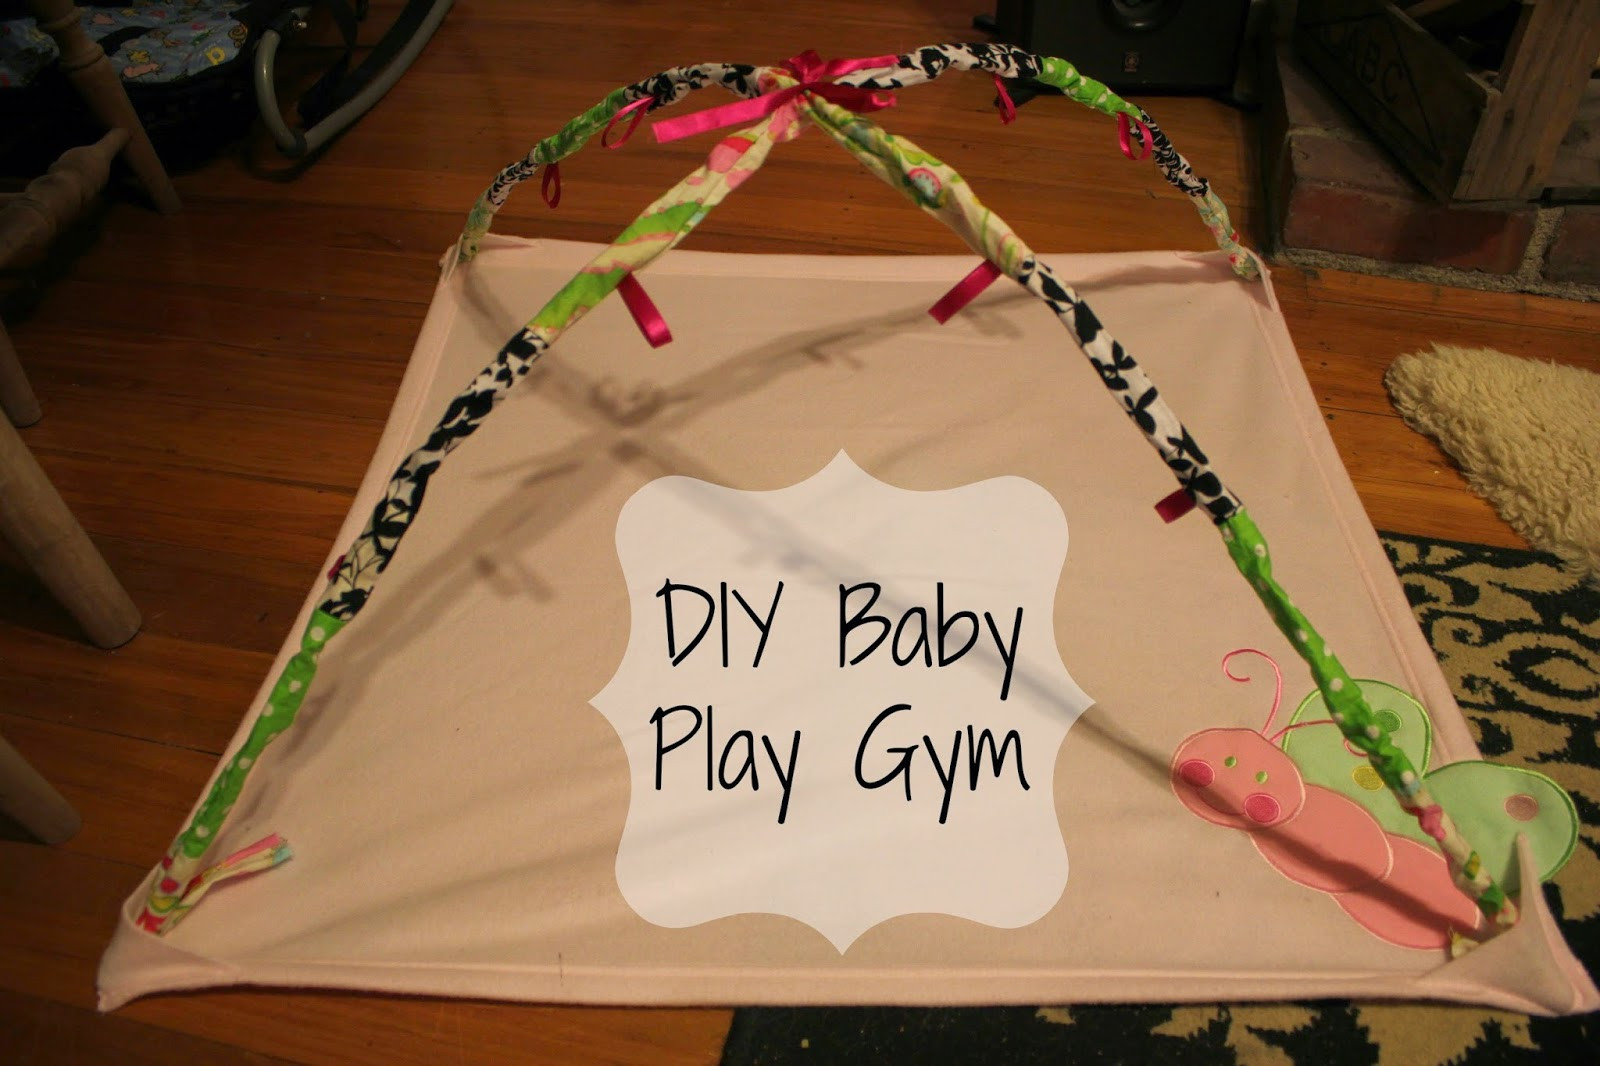 Diy Baby Gym
 A Crafty Adventure DIY Baby Play Gym